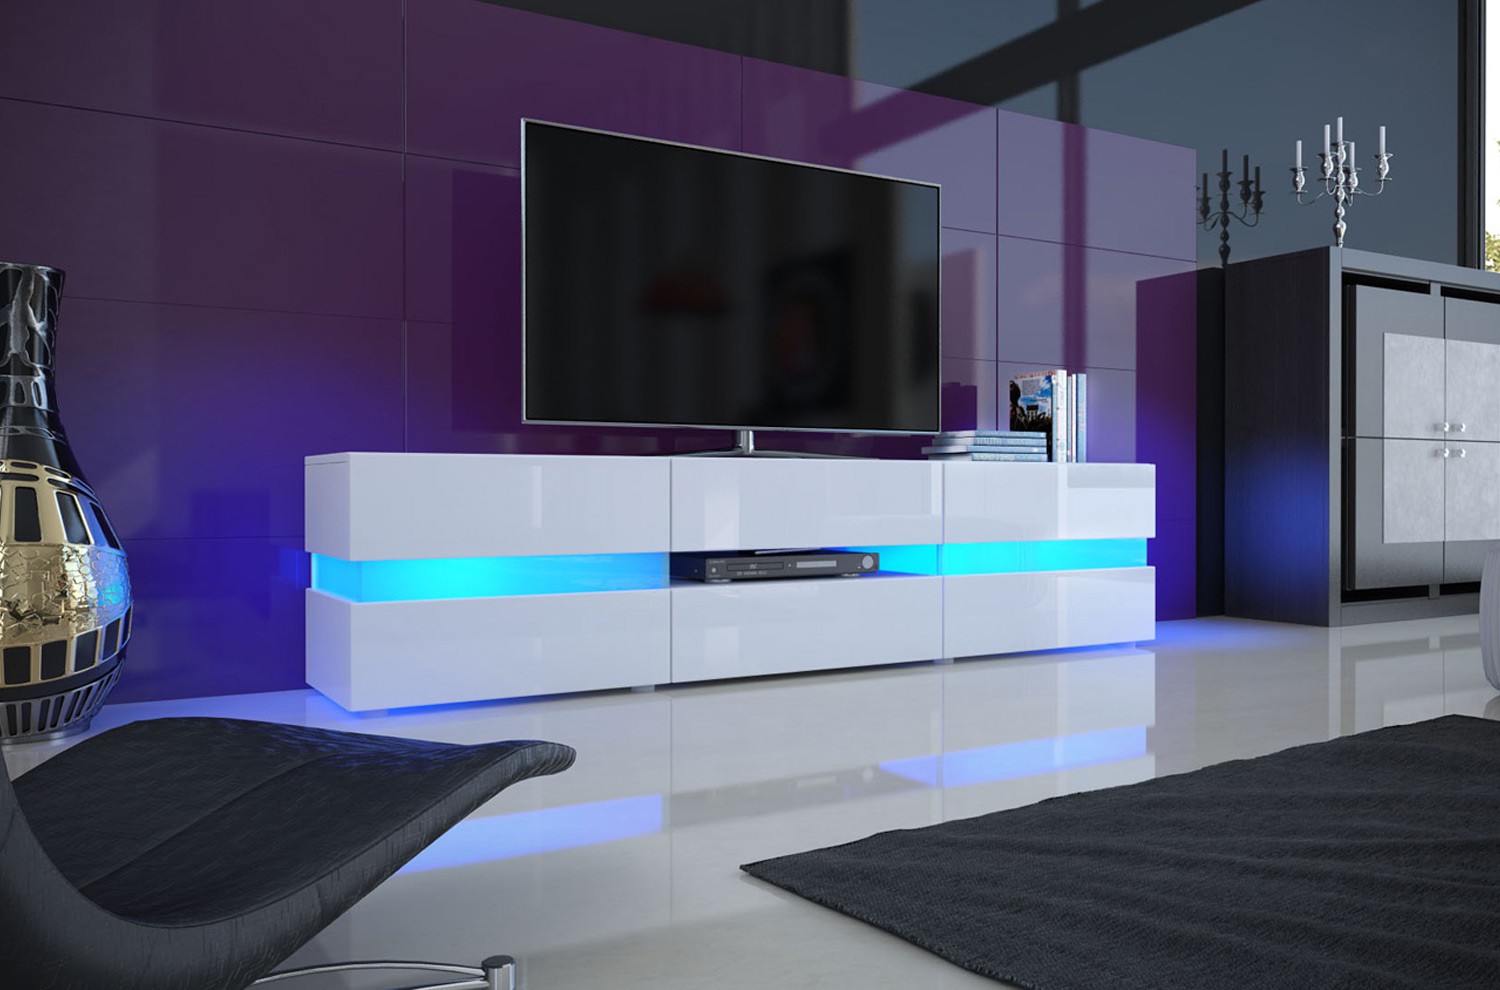 Meuble TV blanc laqué & Led rgb design moderne de salon